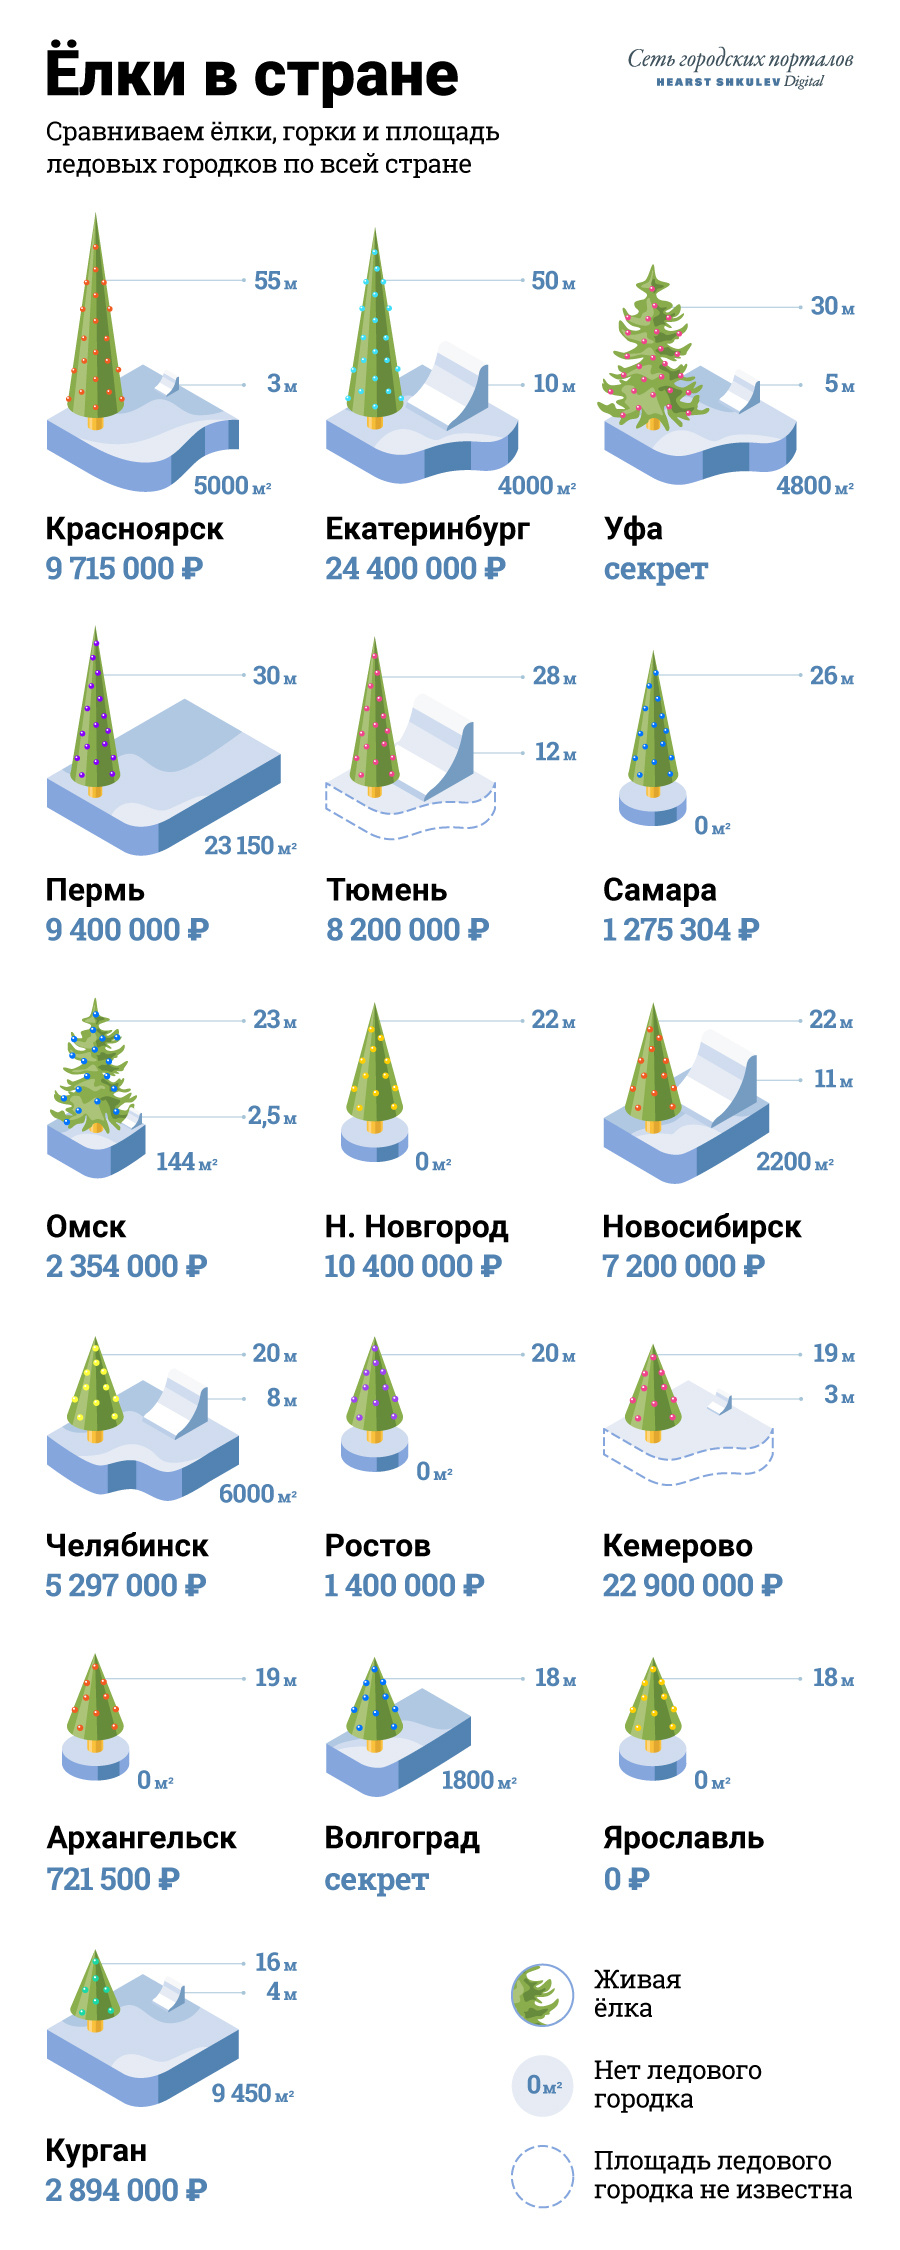 Часть России осталась без ледовых городков, но с елками